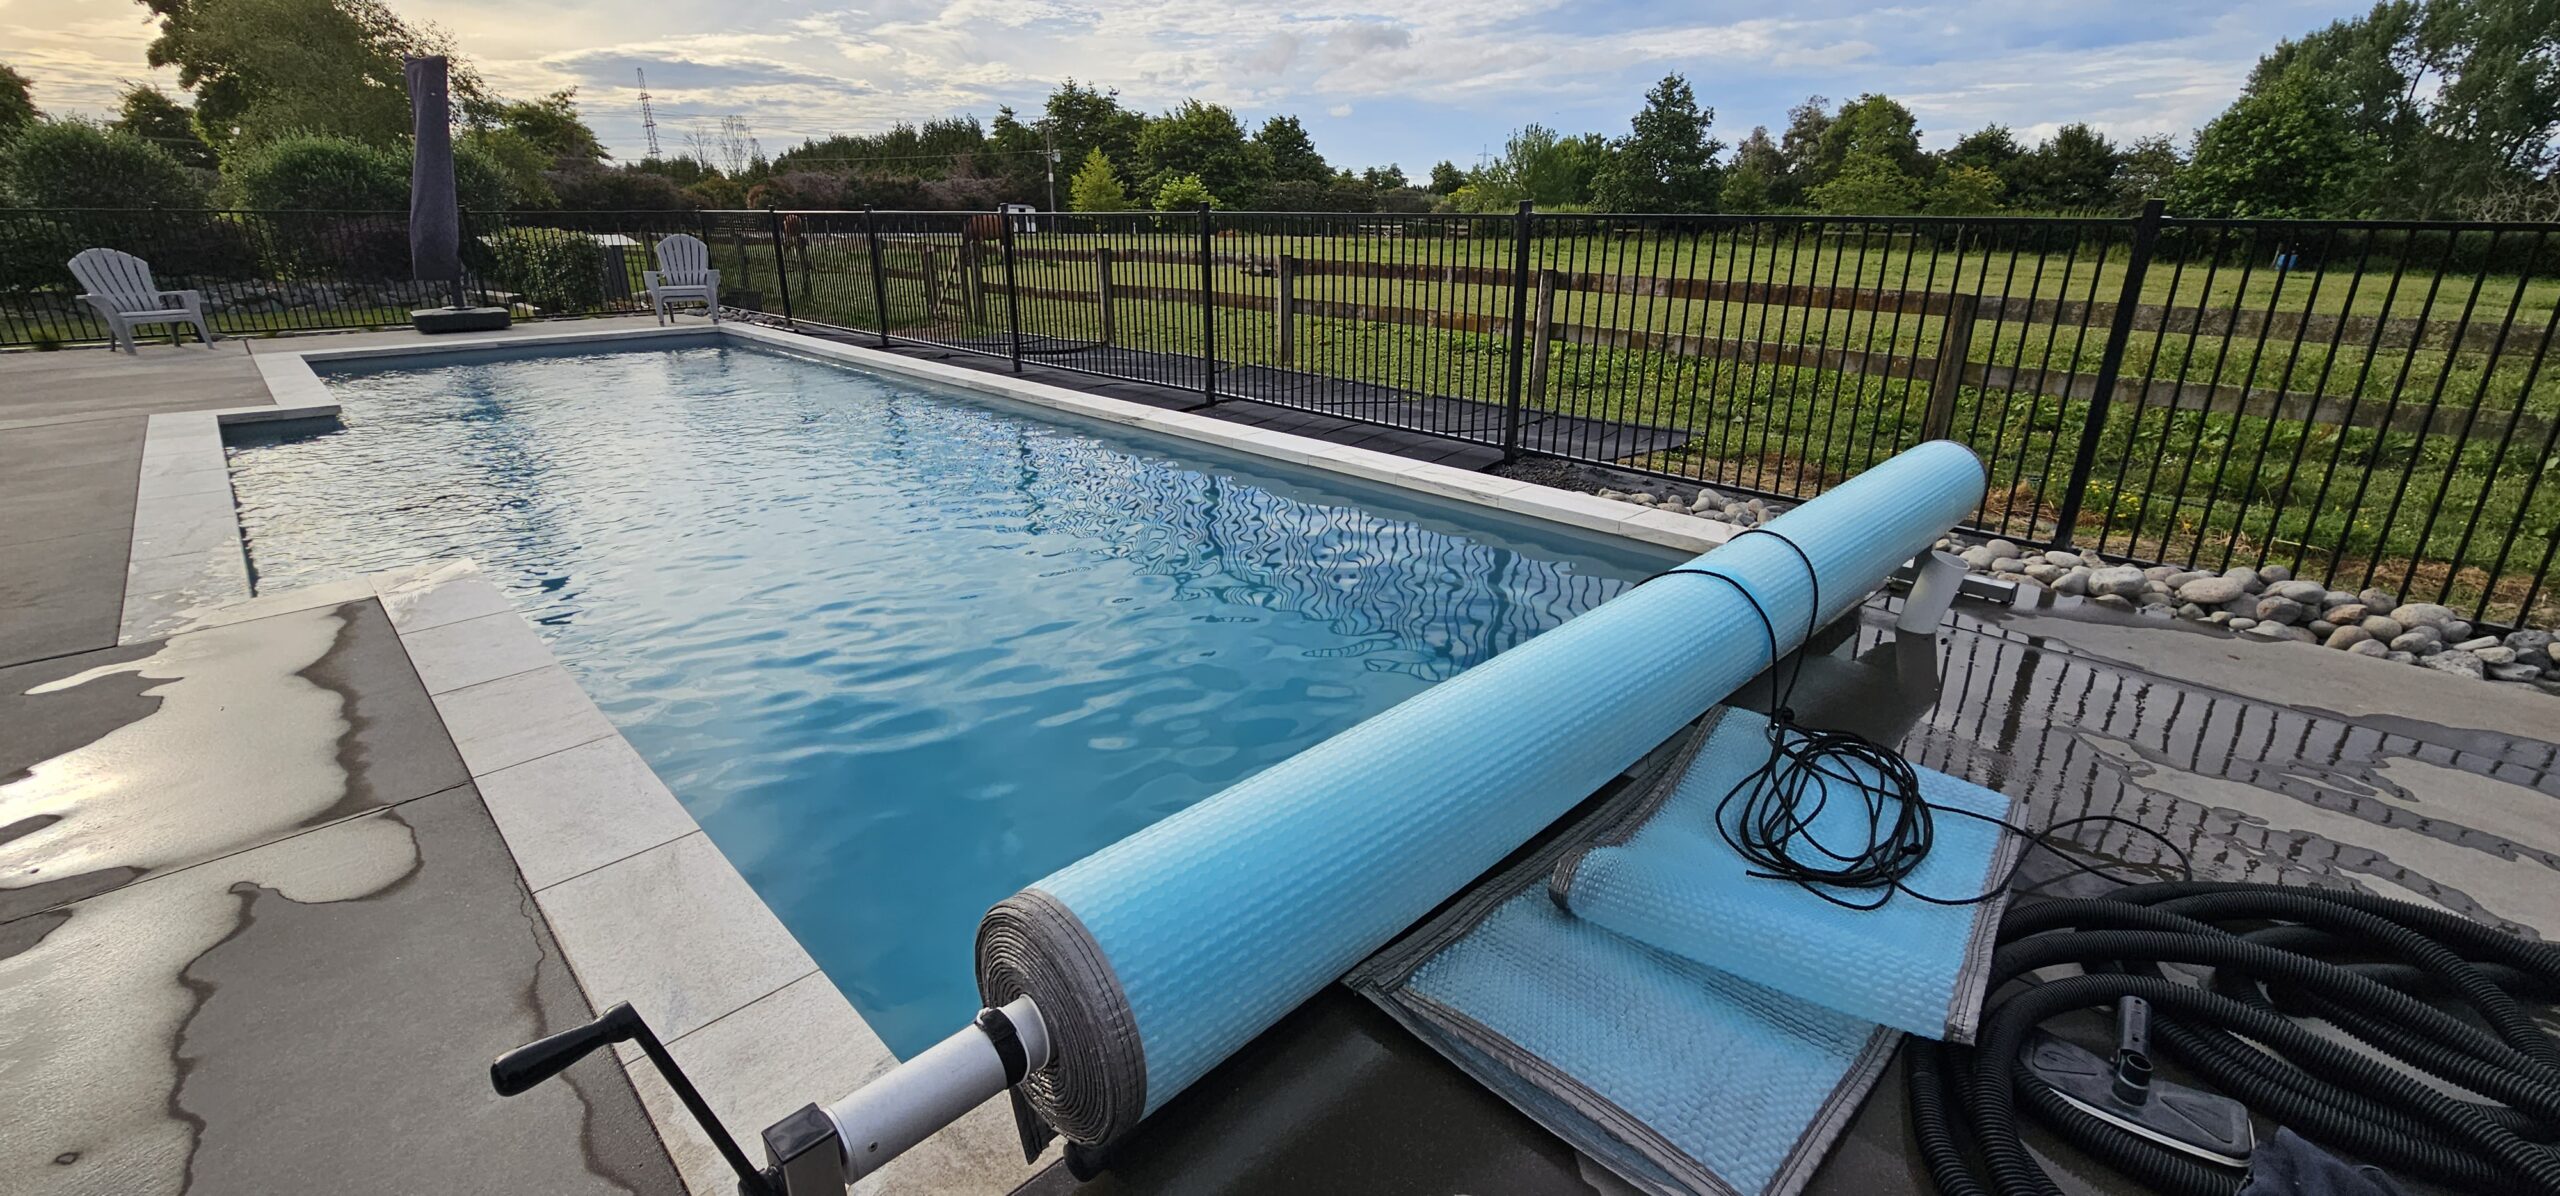 12 meter inground fibreglass swimming pool